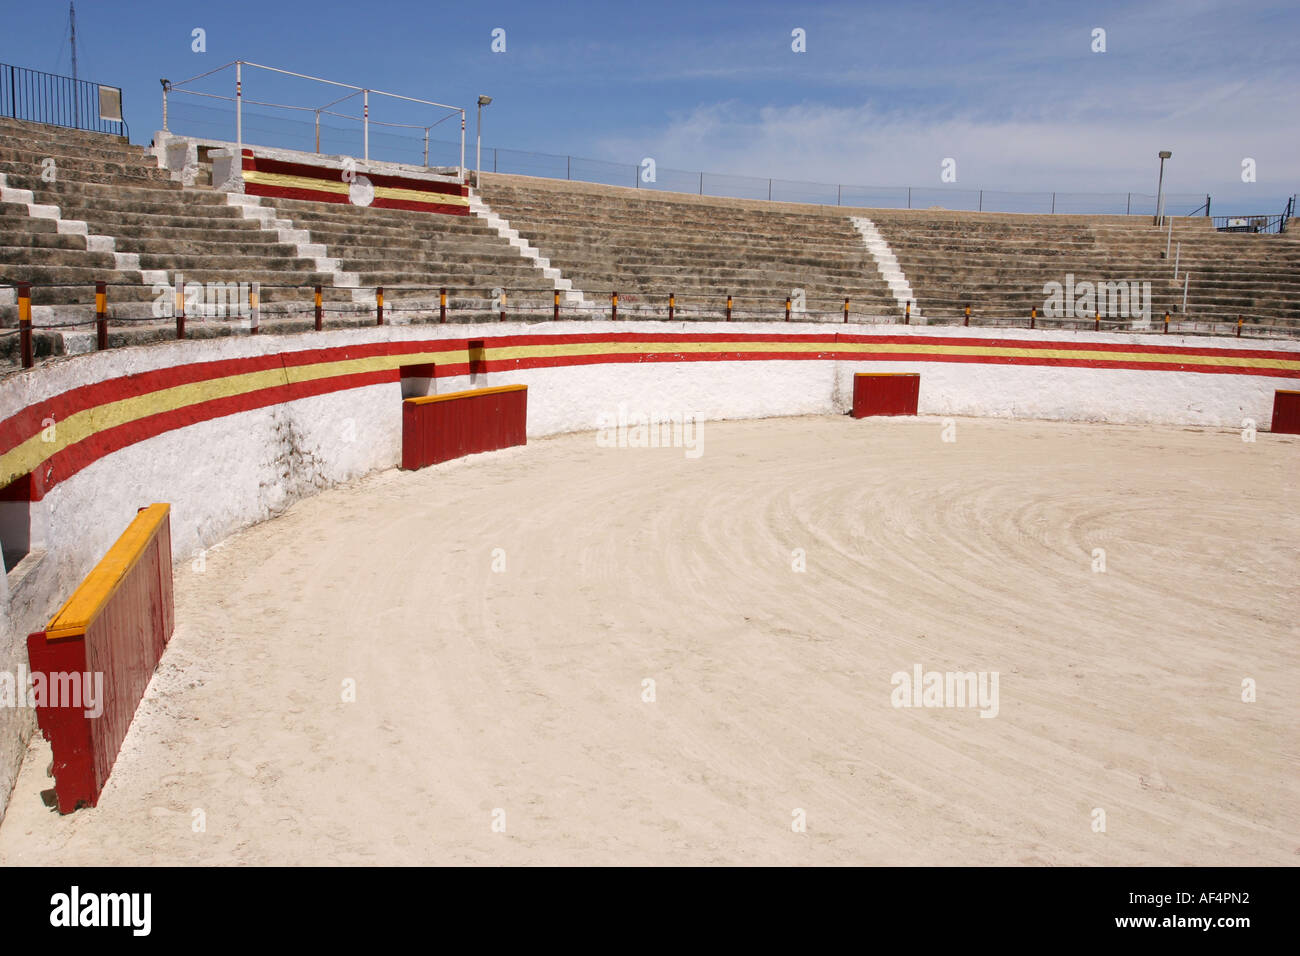 L'arène de corrida dans la vieille ville d'Alcudia de l'île de Majorque Espagne Banque D'Images